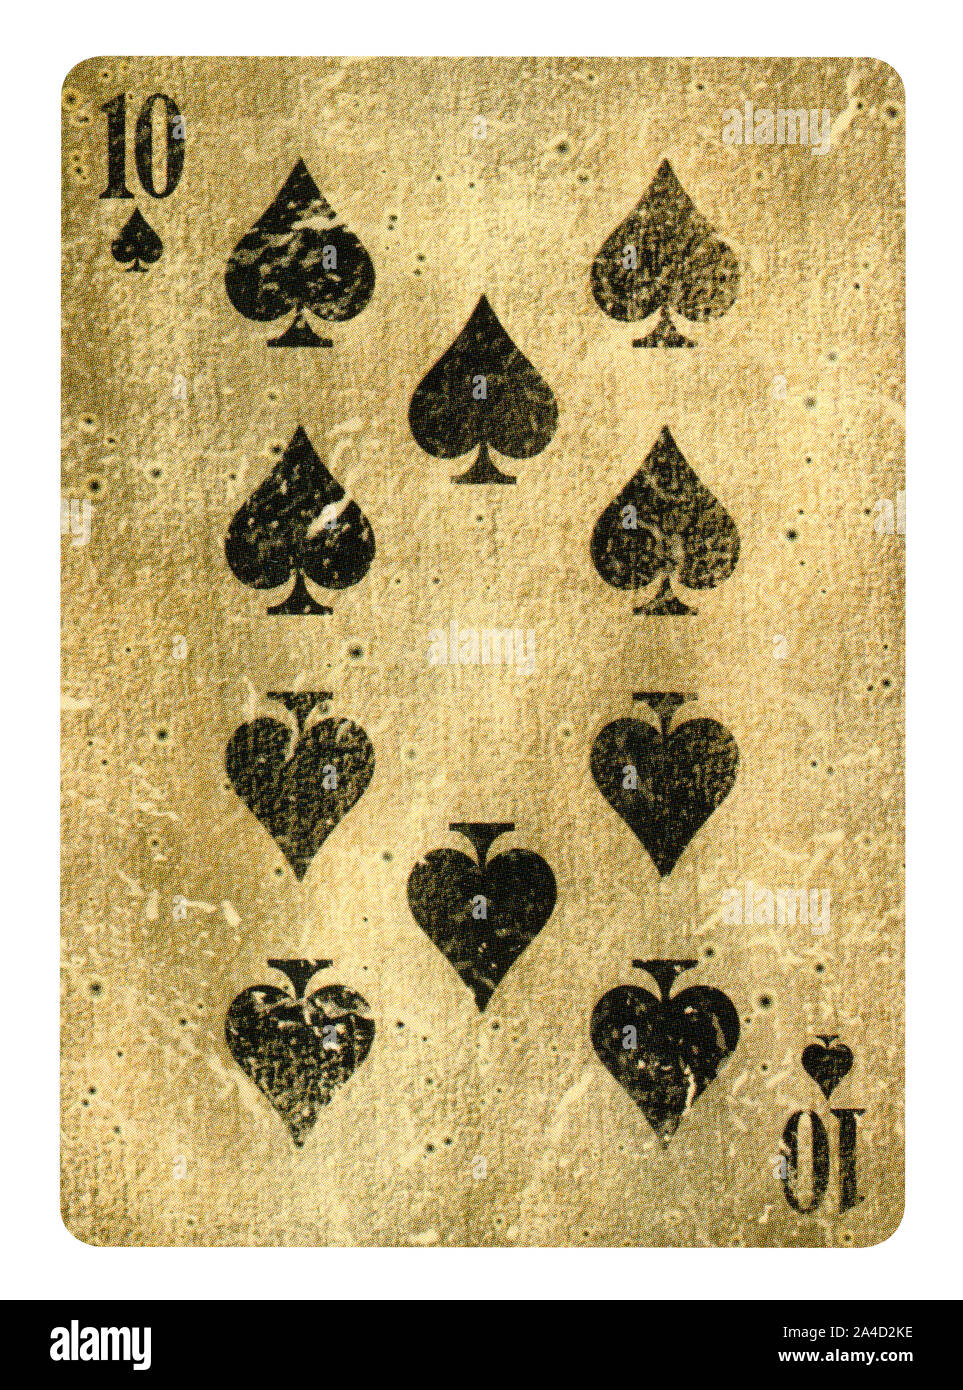 Dix de pique jeu de carte - isolated on white Banque D'Images